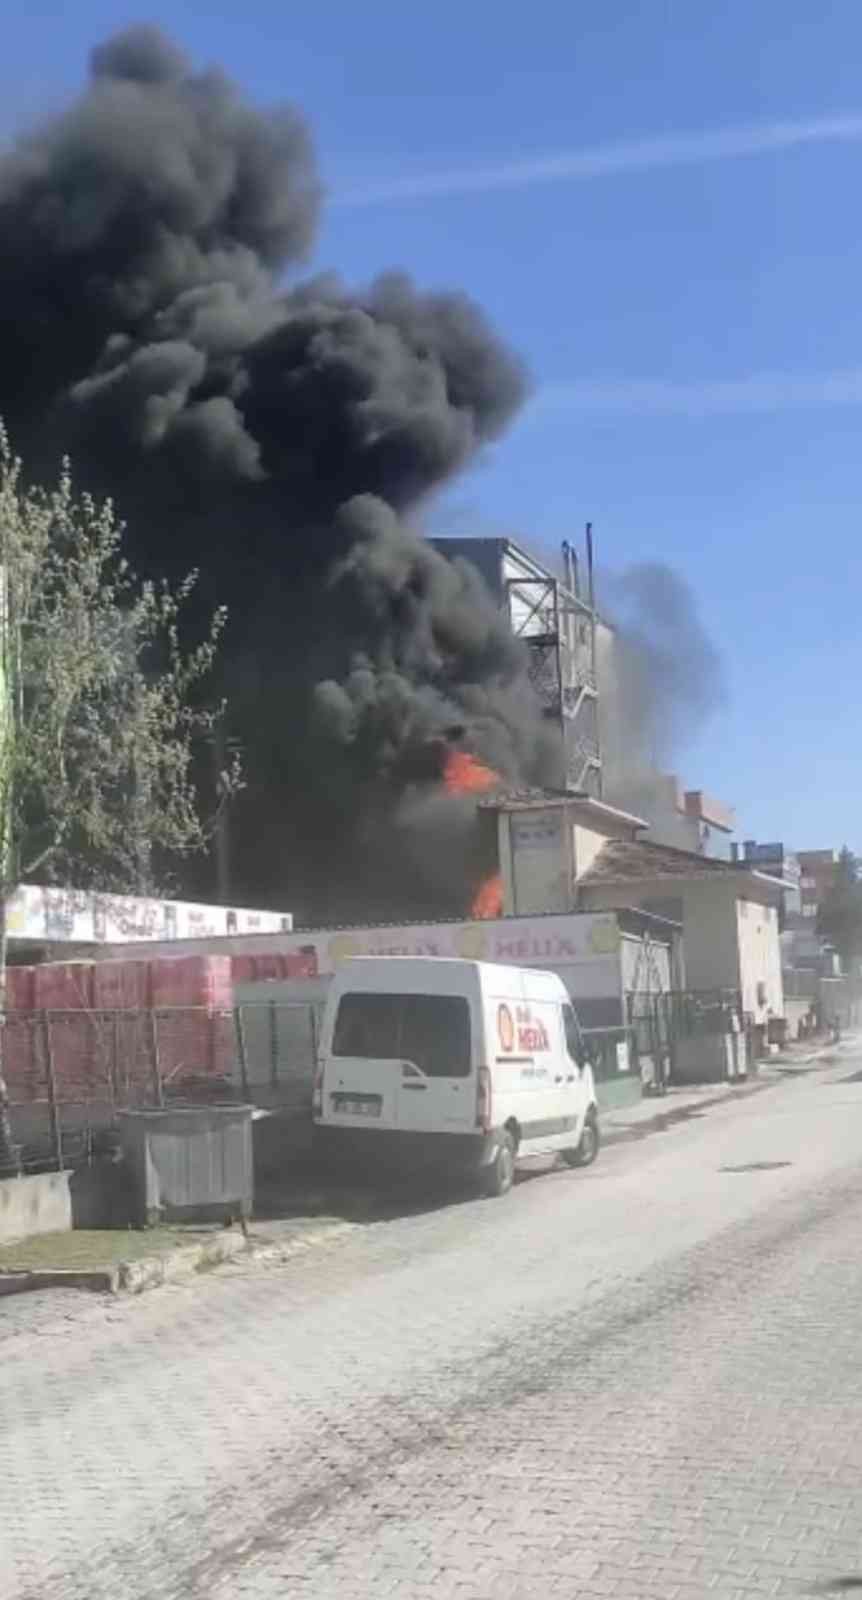 Tuzla Organize Sanayi bölgesinde boya imalatı yapan 3 katlı fabrikanın bahçesinde bulunan kimyasal maddeler yandı. Fabrika önündeki elektrik ...